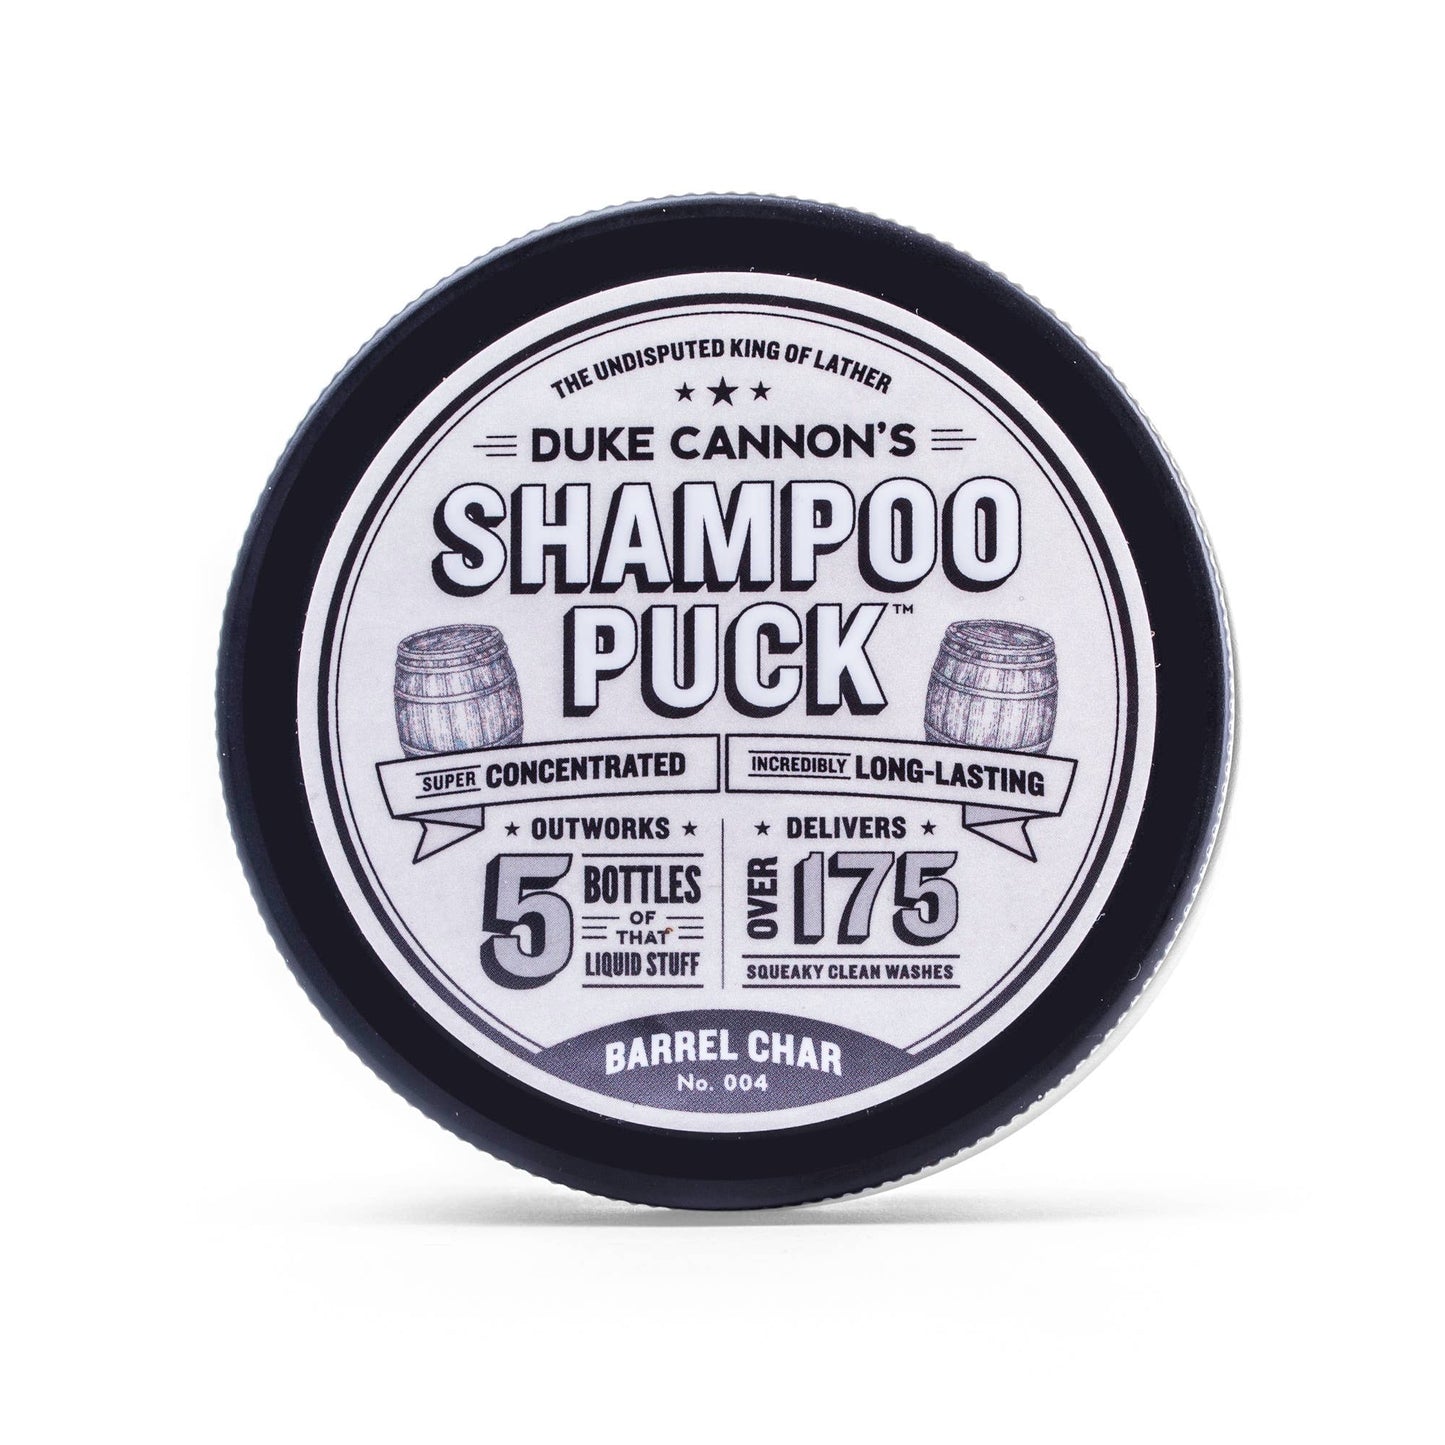 shampoo puck- barrel char